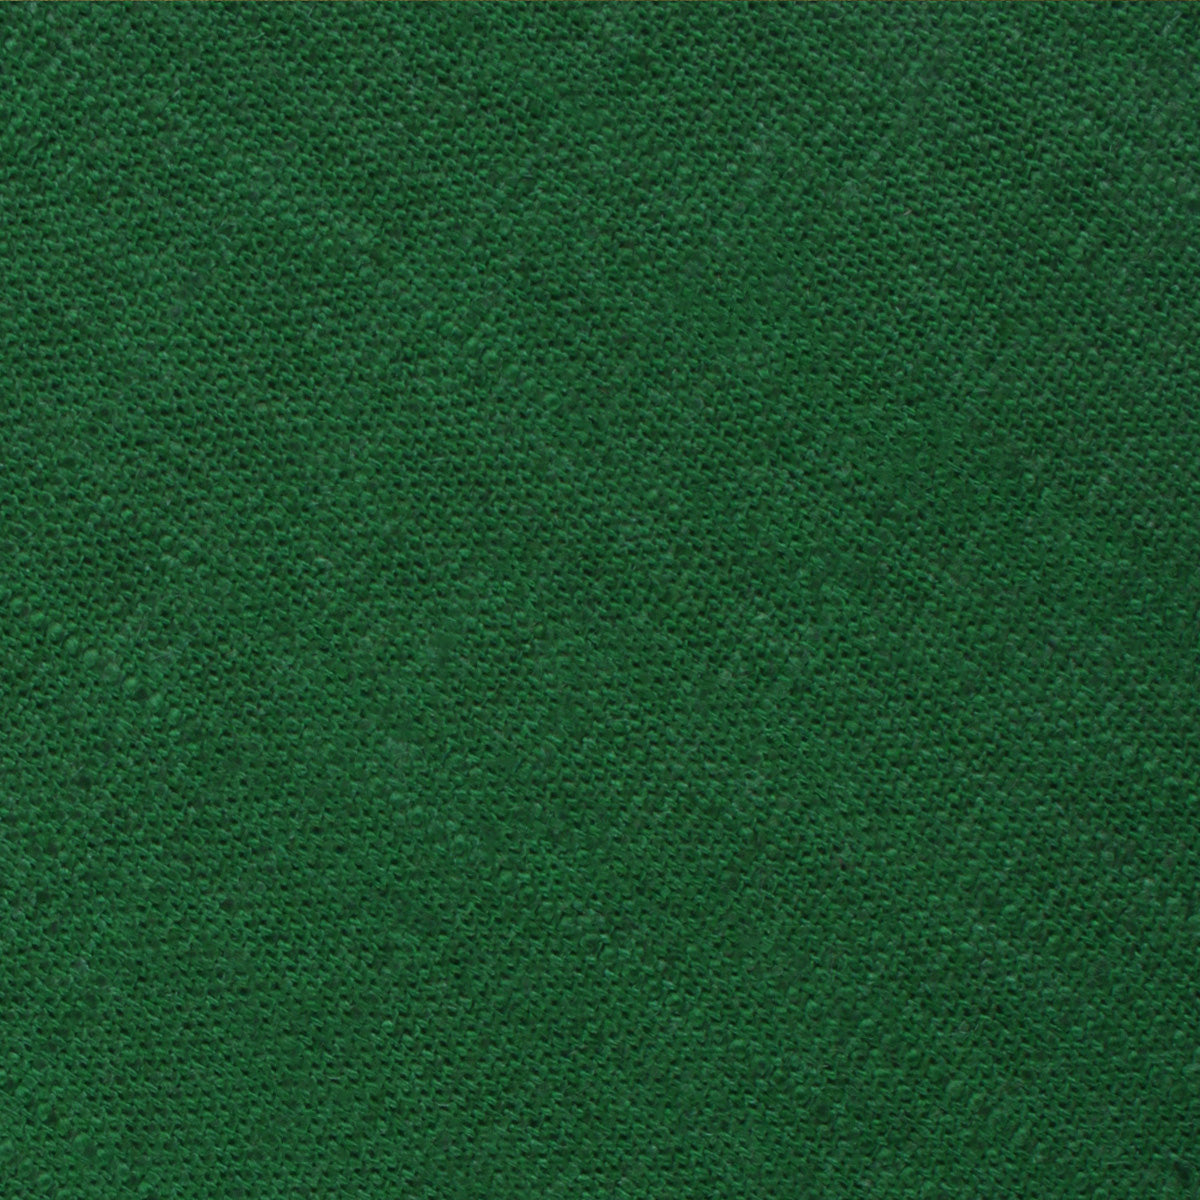 Juniper Dark Green Grain Linen Pocket Square Fabric